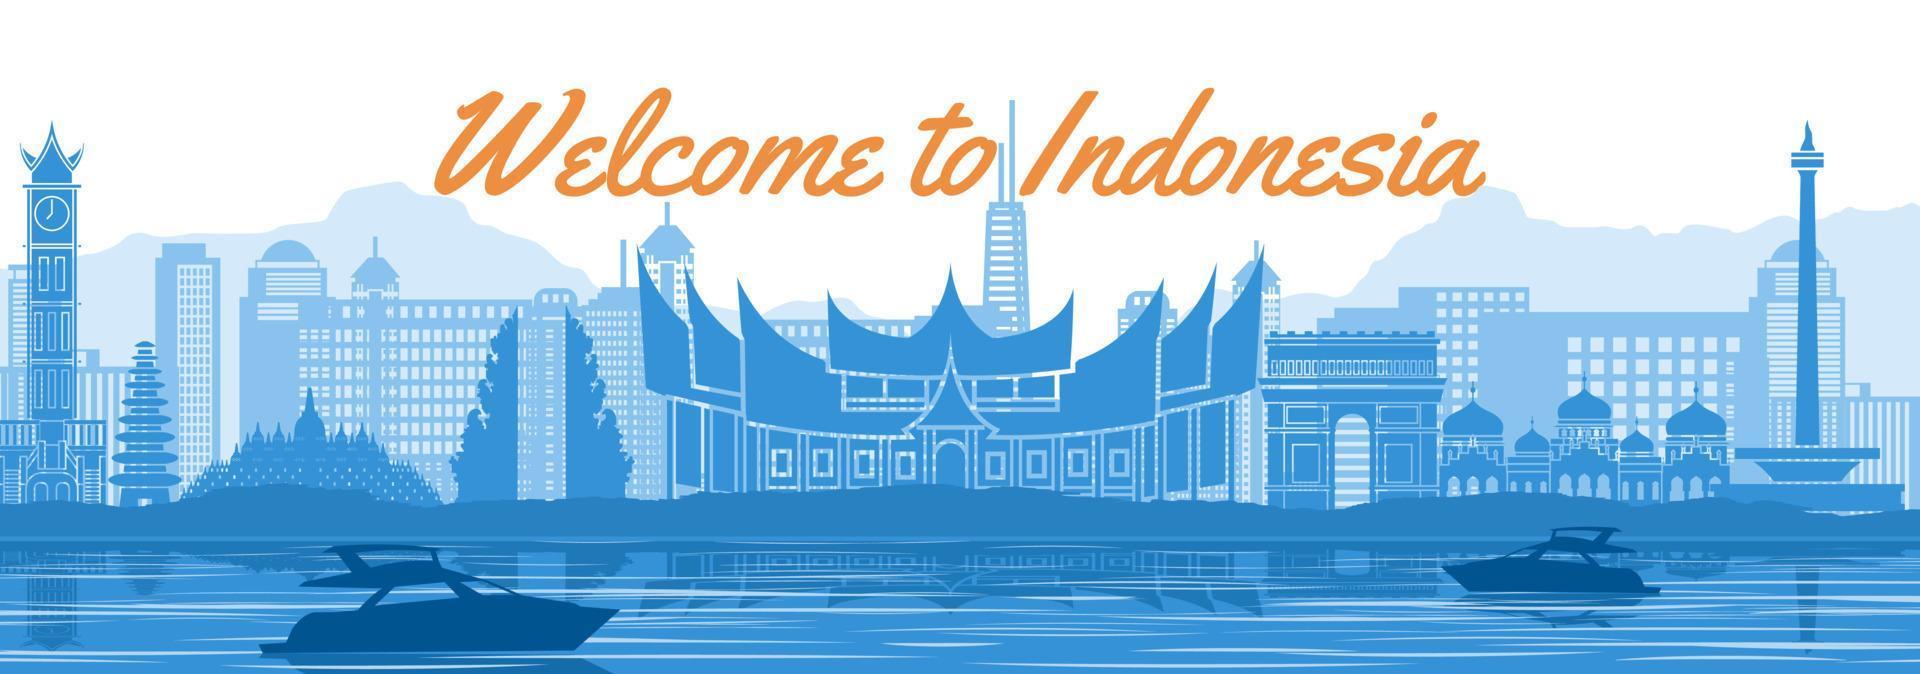 Indonesië beroemde bezienswaardigheid met blauw en wit kleurontwerp vector